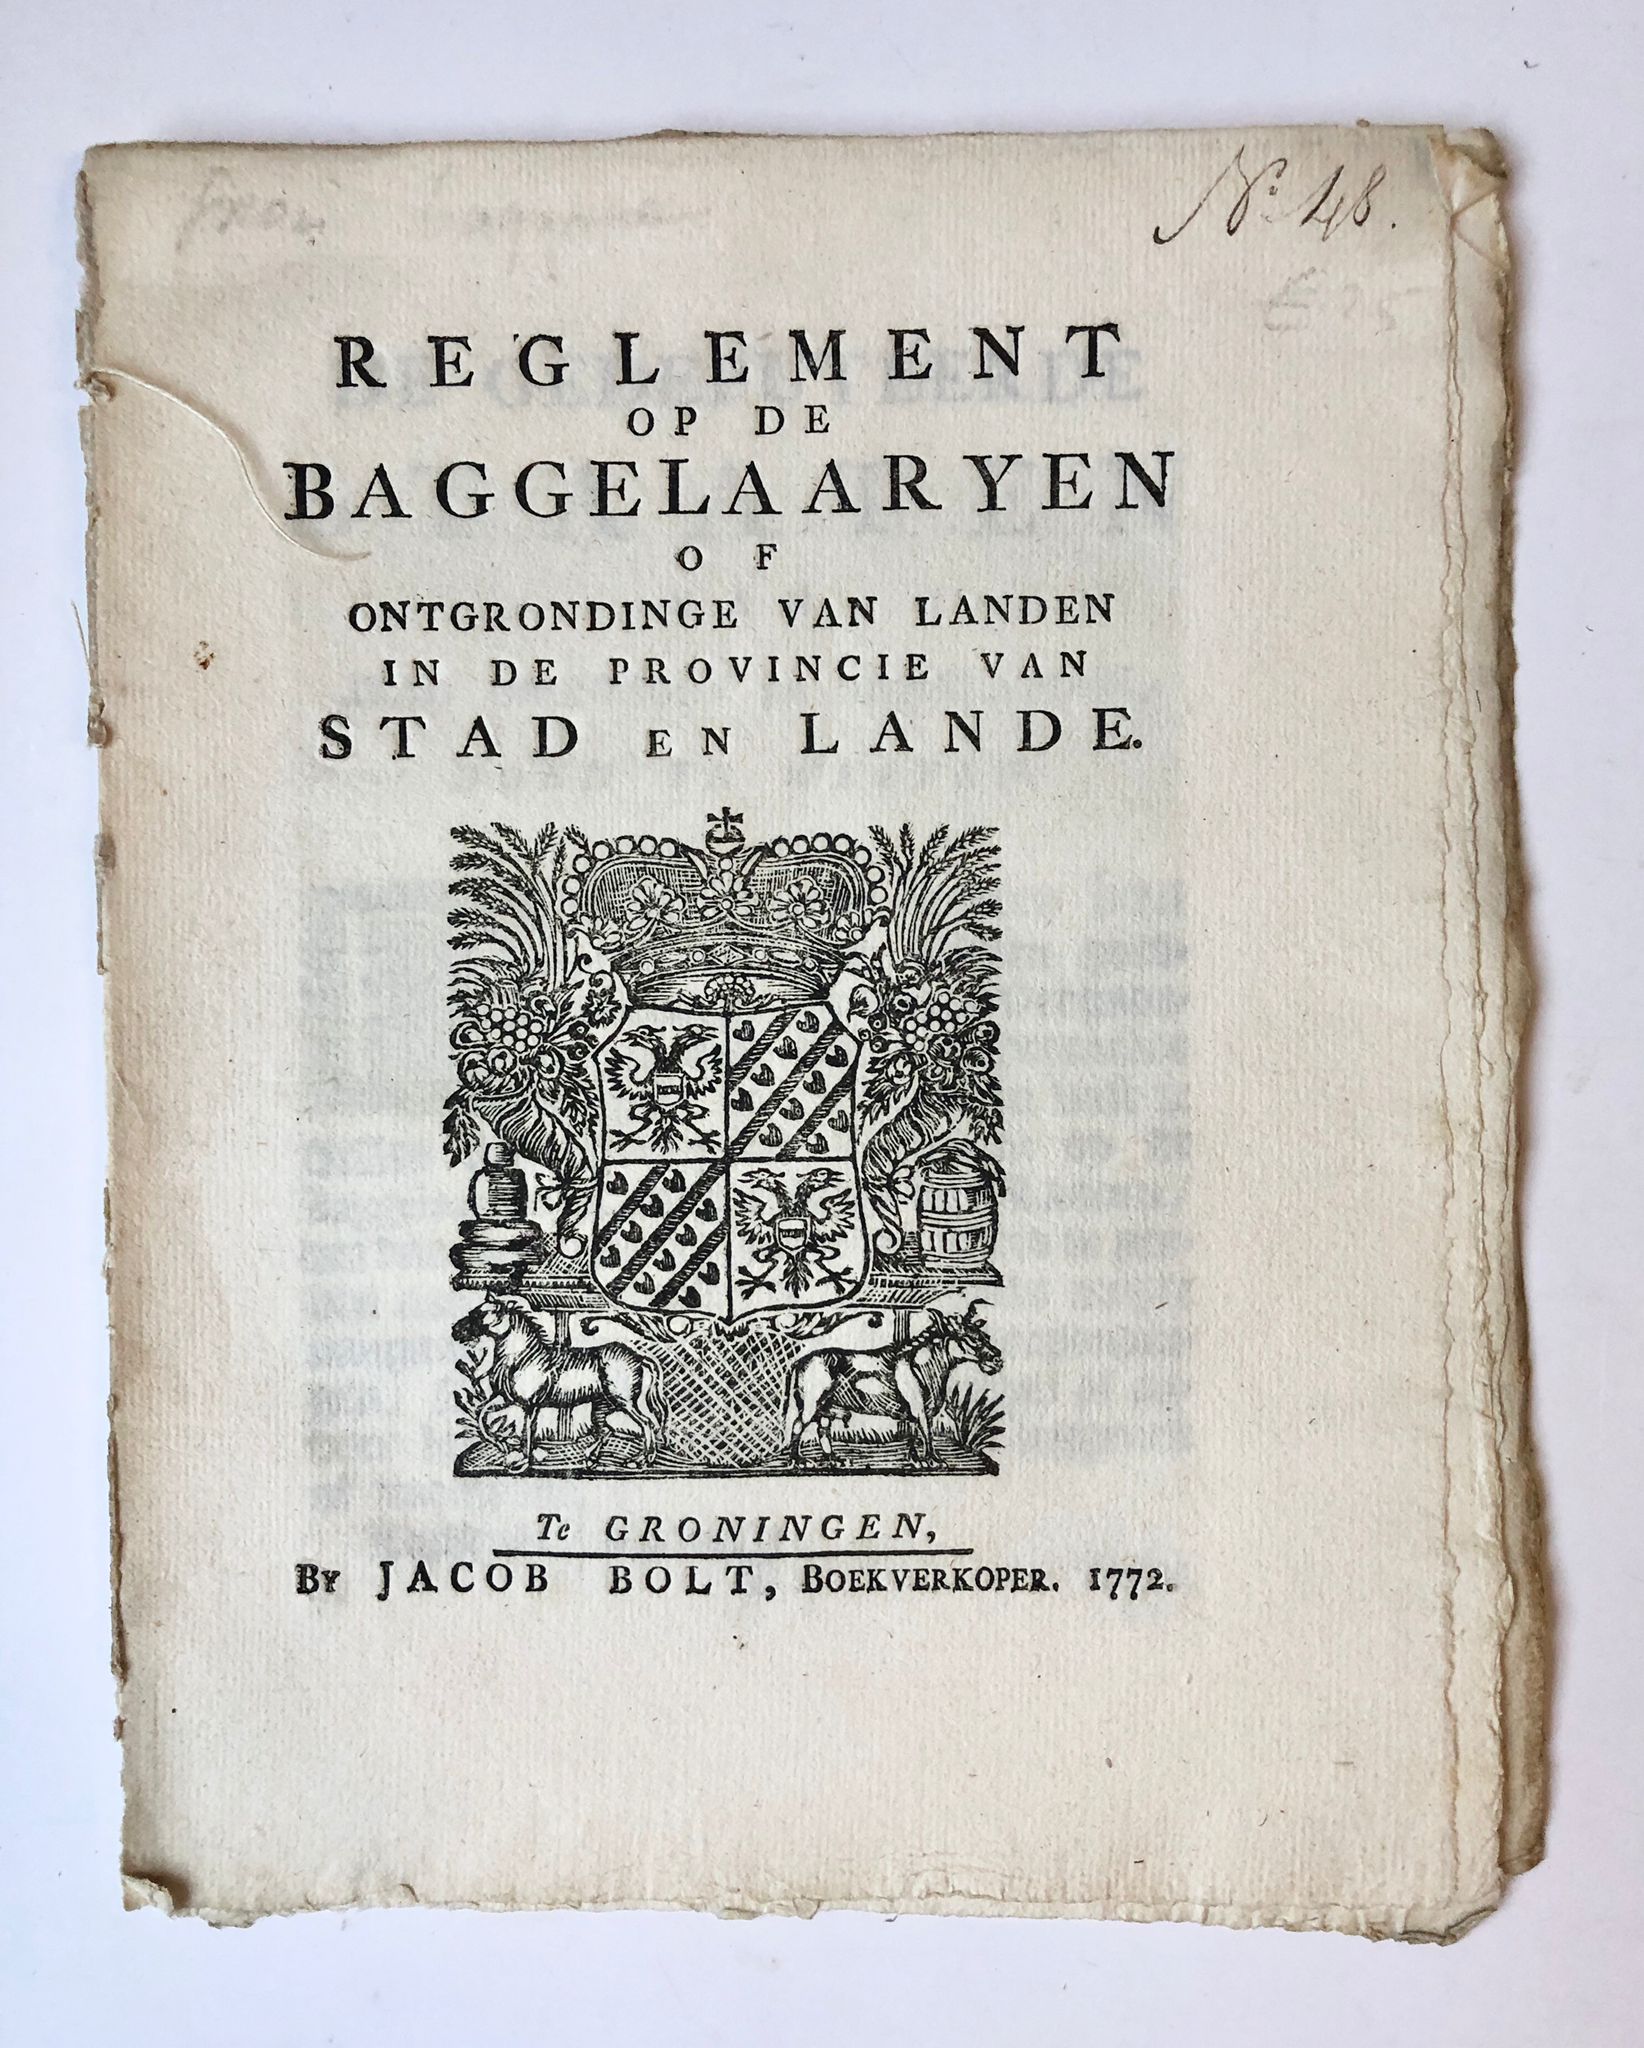 [Groningen, Baggeren, dredging 1772] Reglement op de Baggelaaryen of ontgrondige van Landen in de Provincie van Stad en Lande, by Jacob Bolt, Te Groningen, 1772, No. 48, 6 pp.